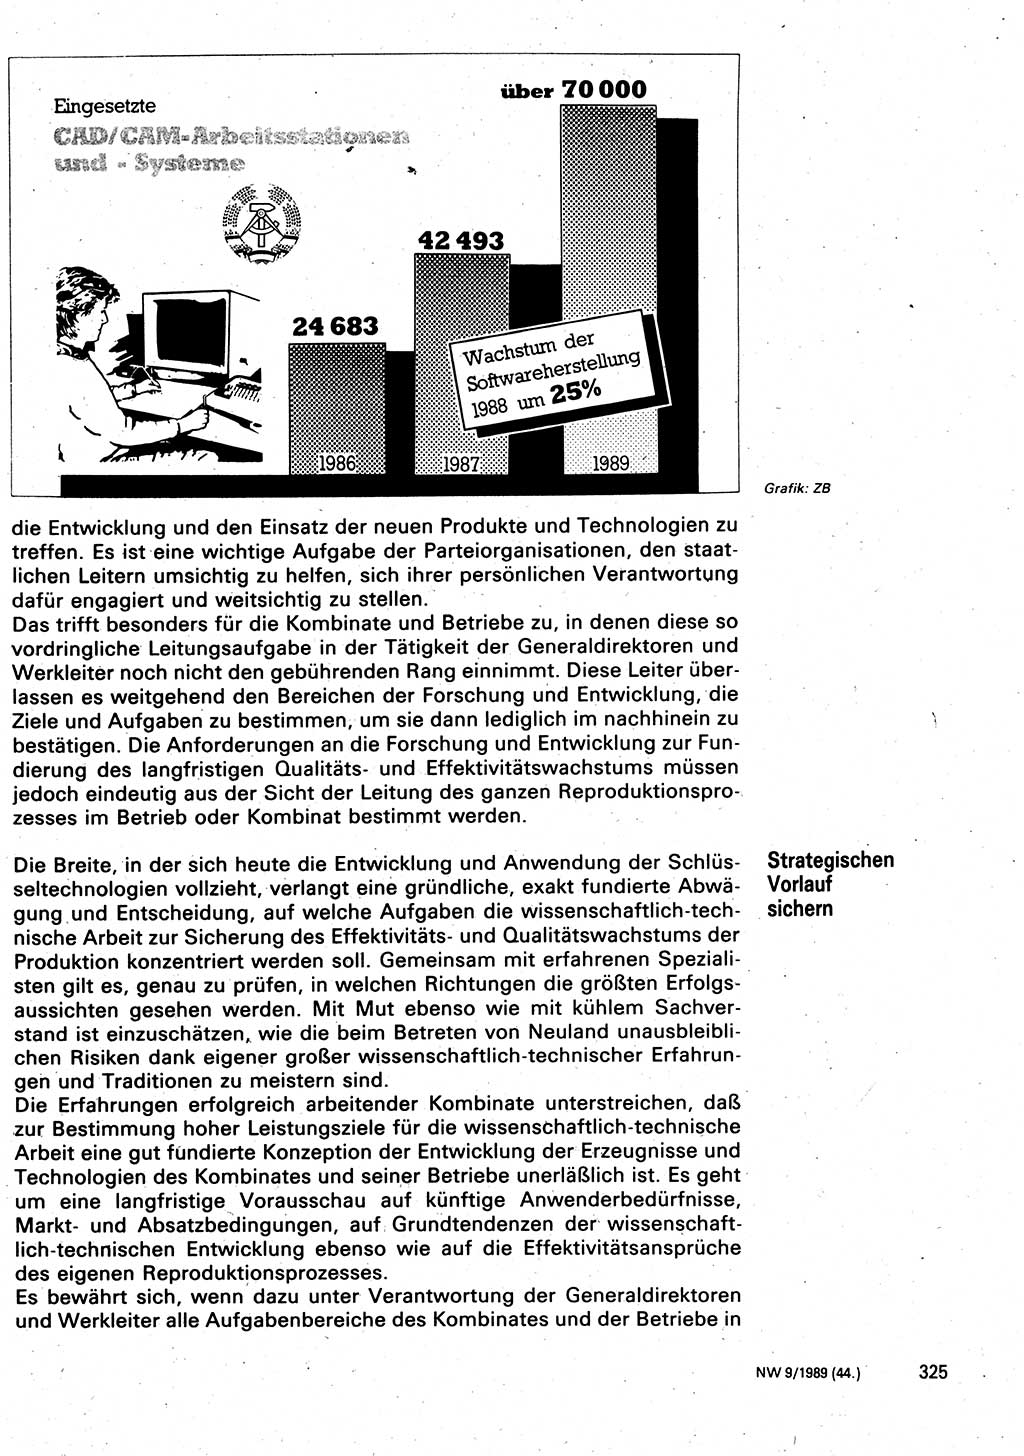 Neuer Weg (NW), Organ des Zentralkomitees (ZK) der SED (Sozialistische Einheitspartei Deutschlands) für Fragen des Parteilebens, 44. Jahrgang [Deutsche Demokratische Republik (DDR)] 1989, Seite 325 (NW ZK SED DDR 1989, S. 325)